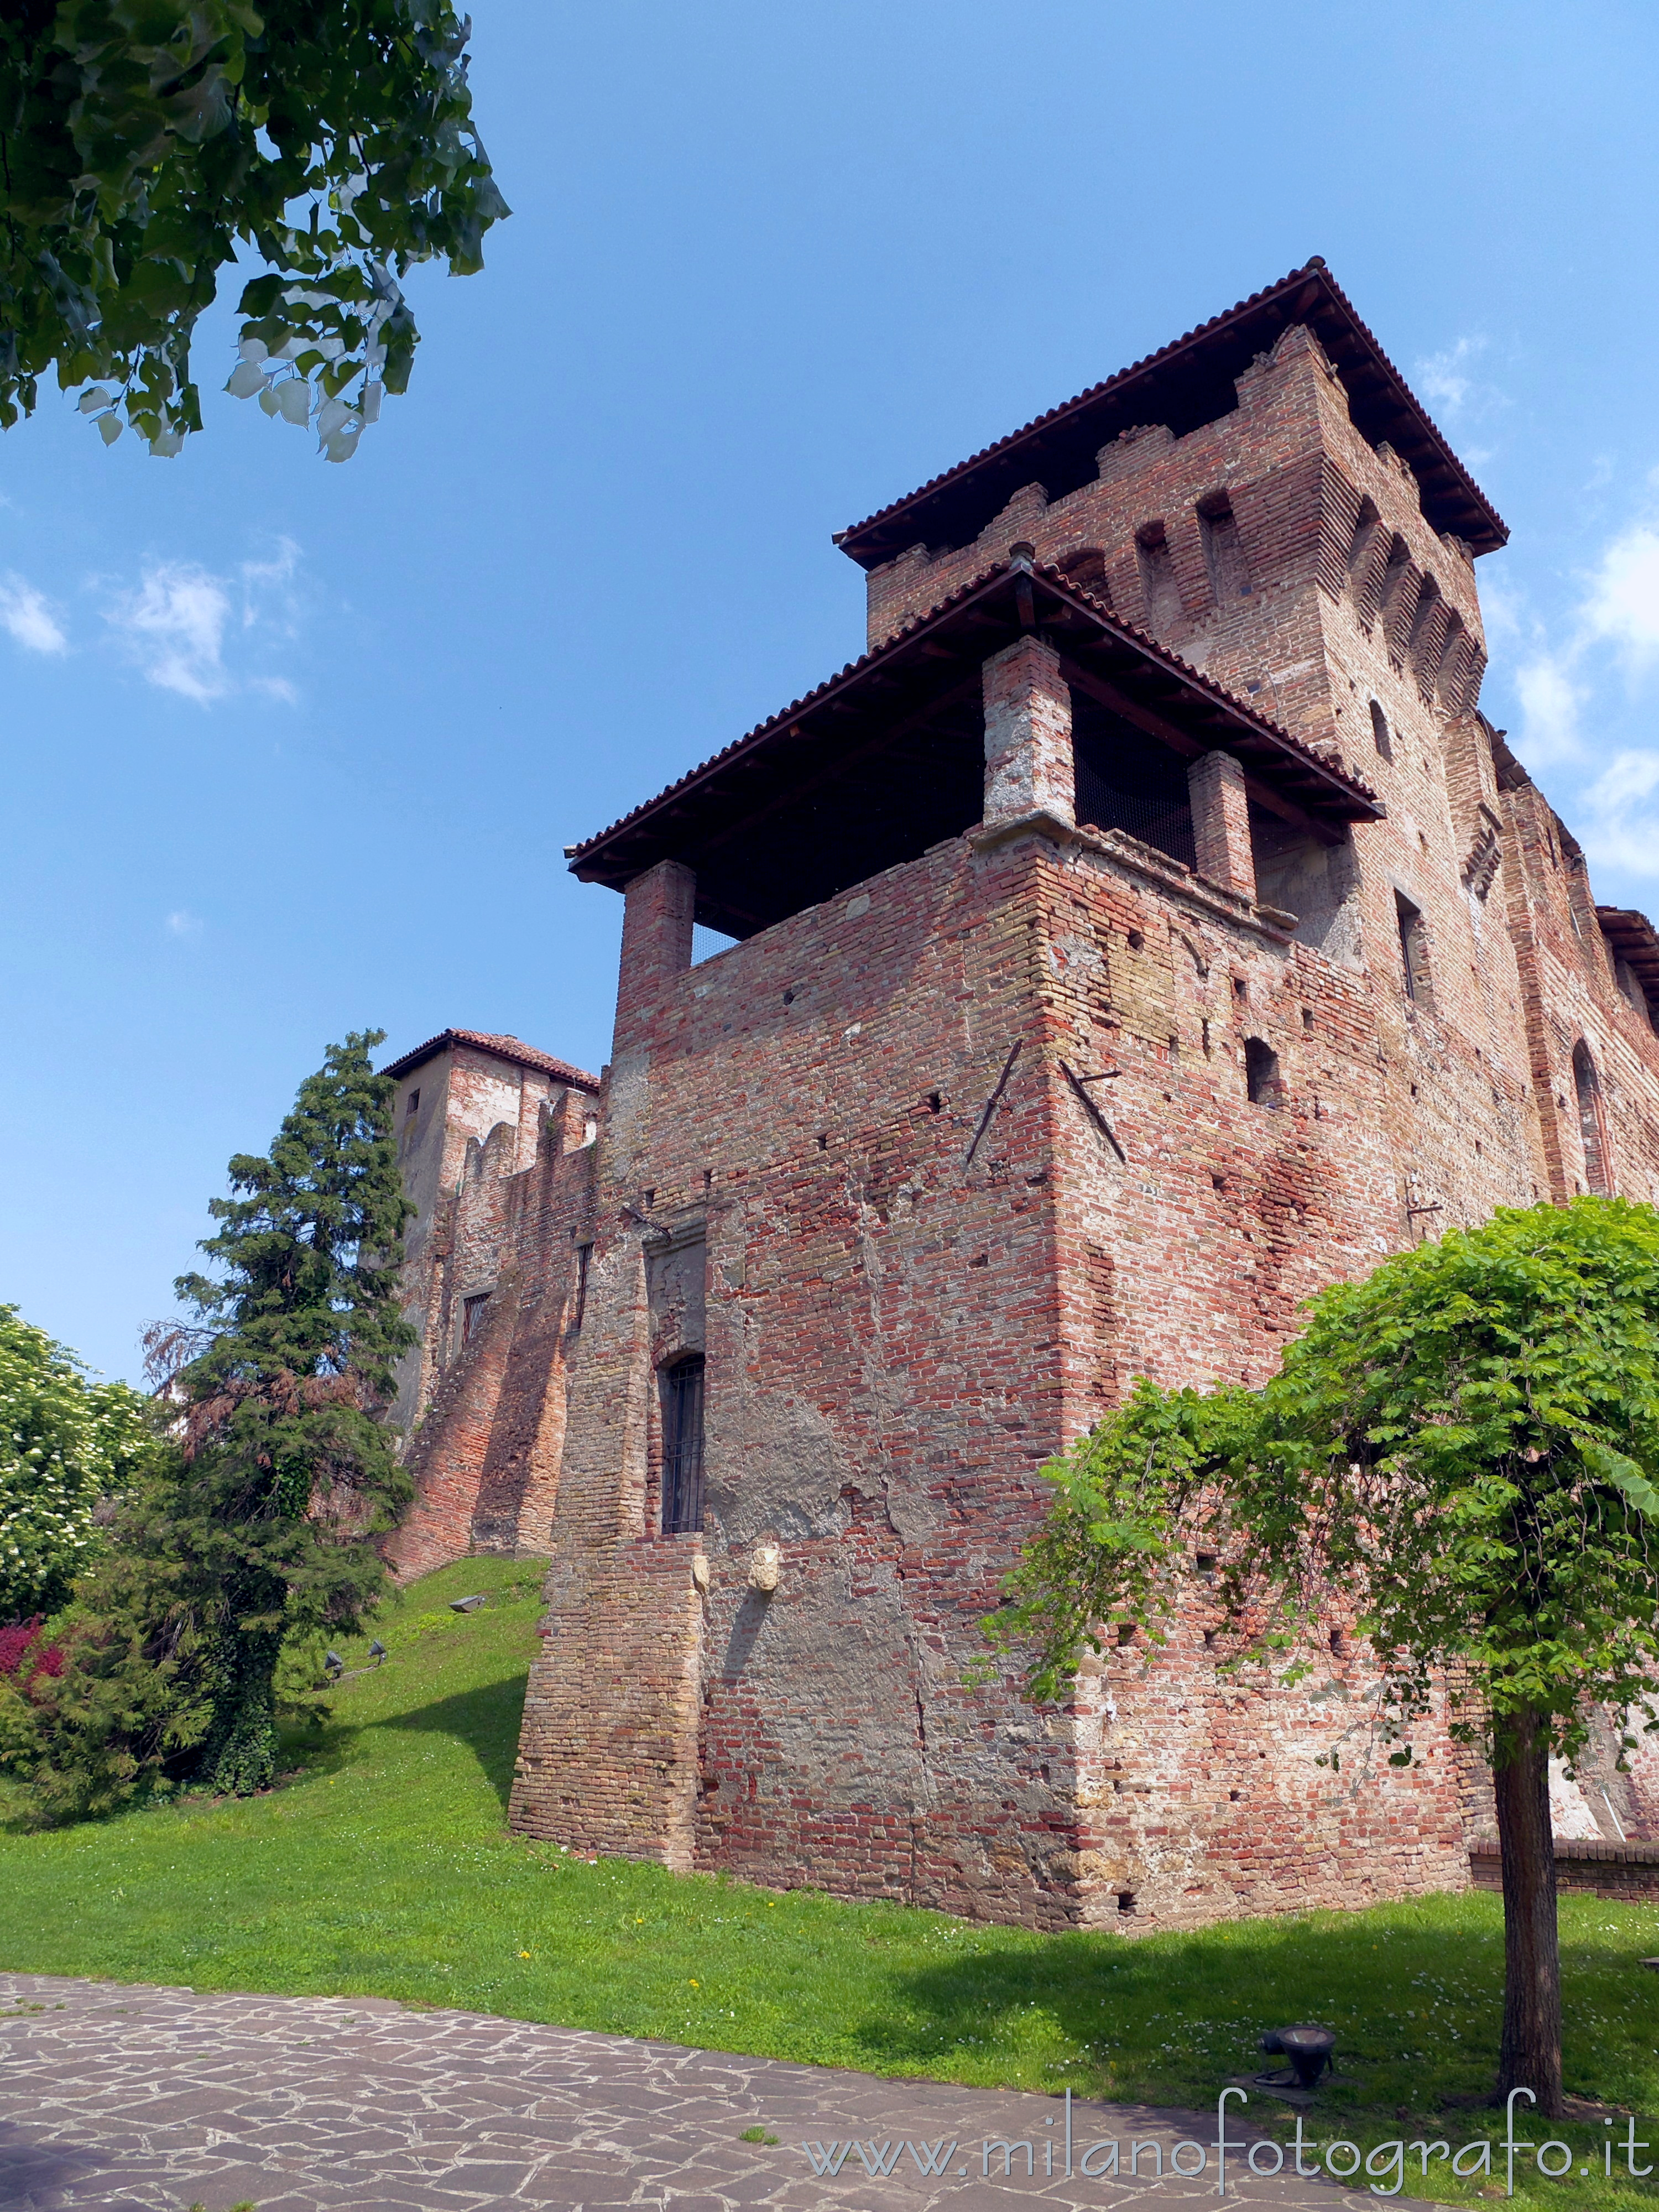 Romano di Lombardia (Bergamo, Italy): Fifteenth century loggia of the fortess - Romano di Lombardia (Bergamo, Italy)